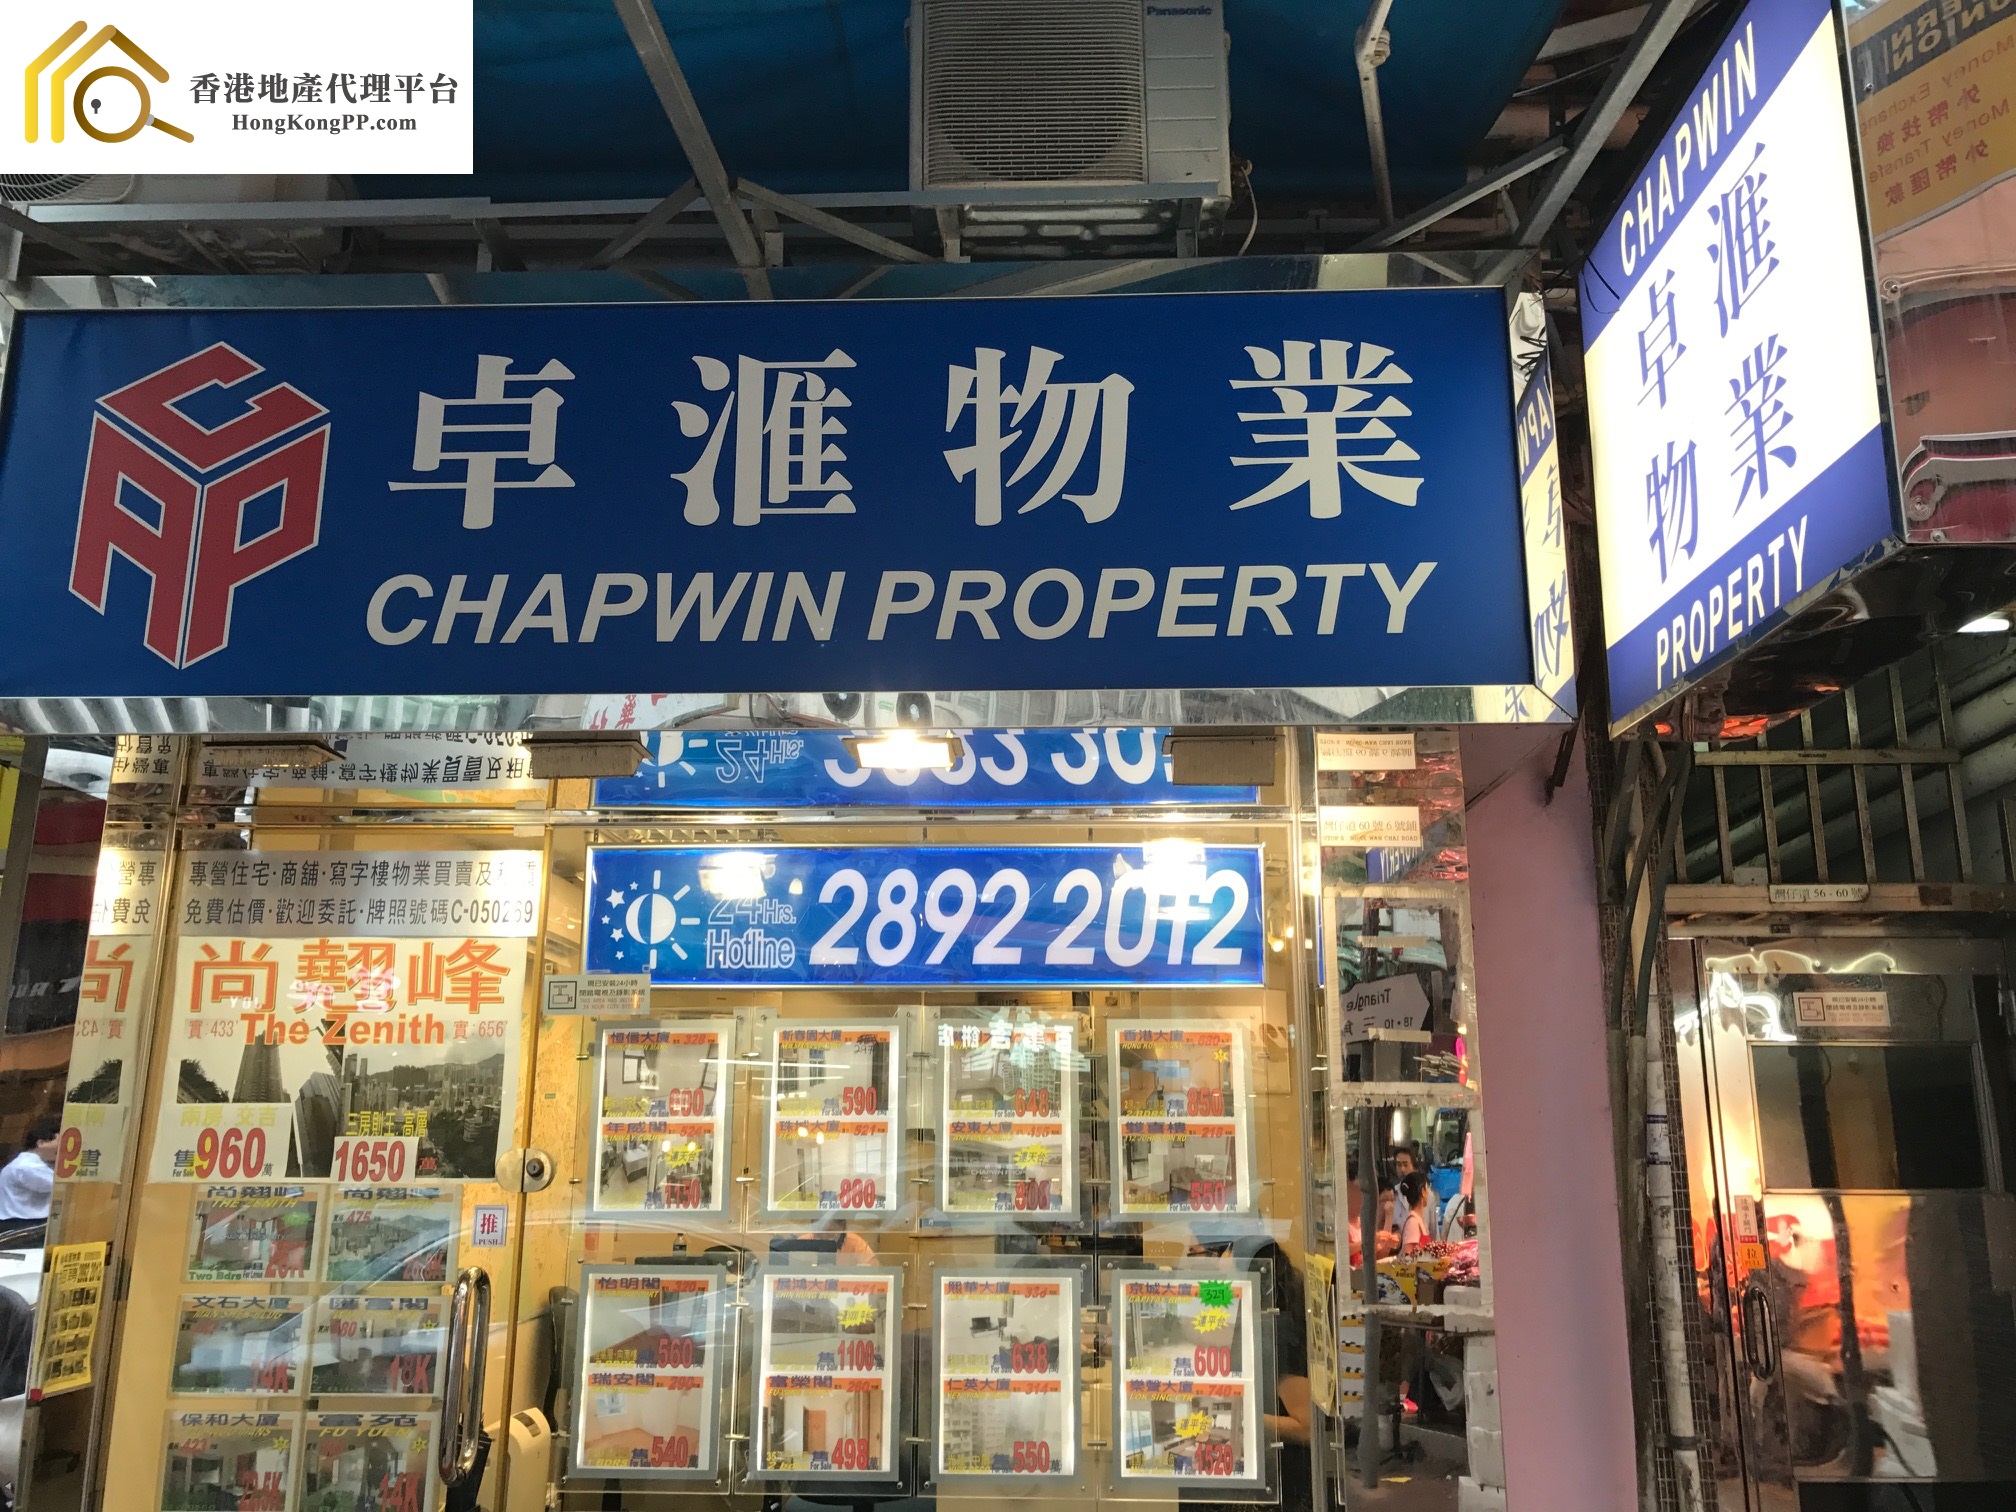 住宅地產代理: 卓匯物業 Chapwin Property Agency